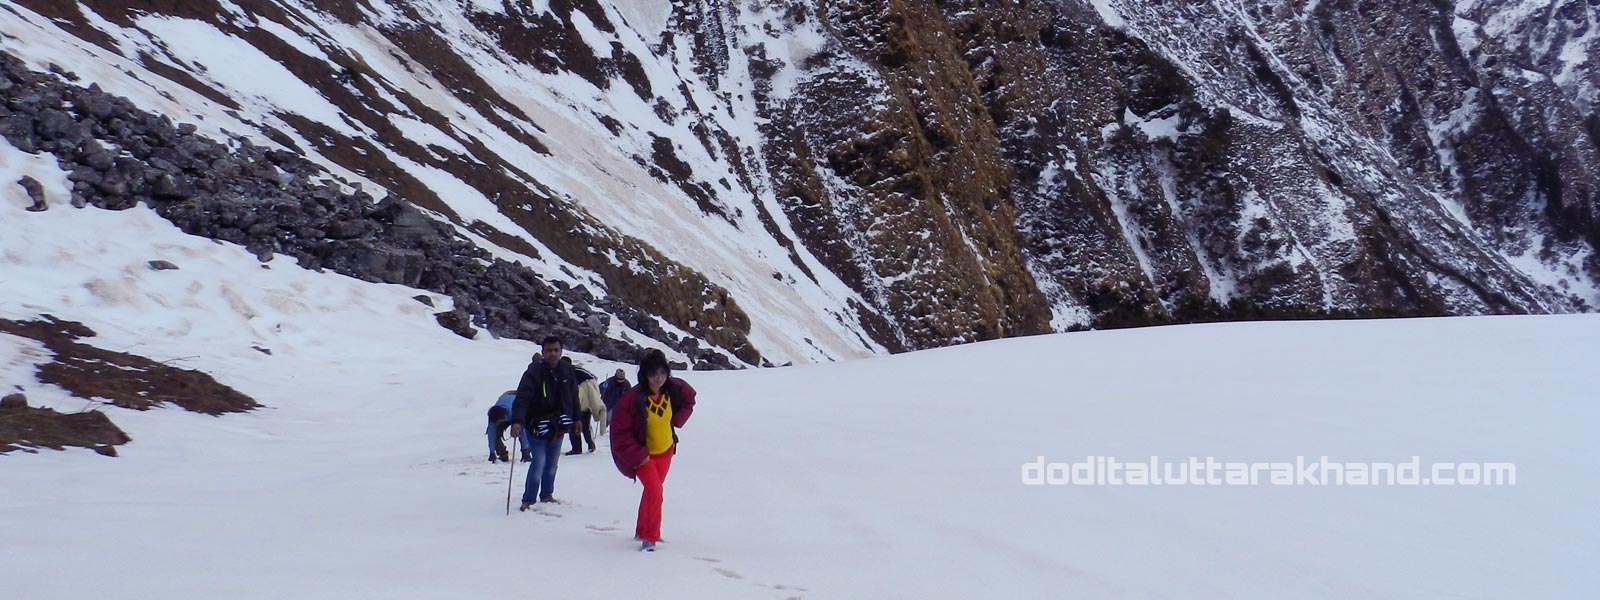 Trek Route at Dodital